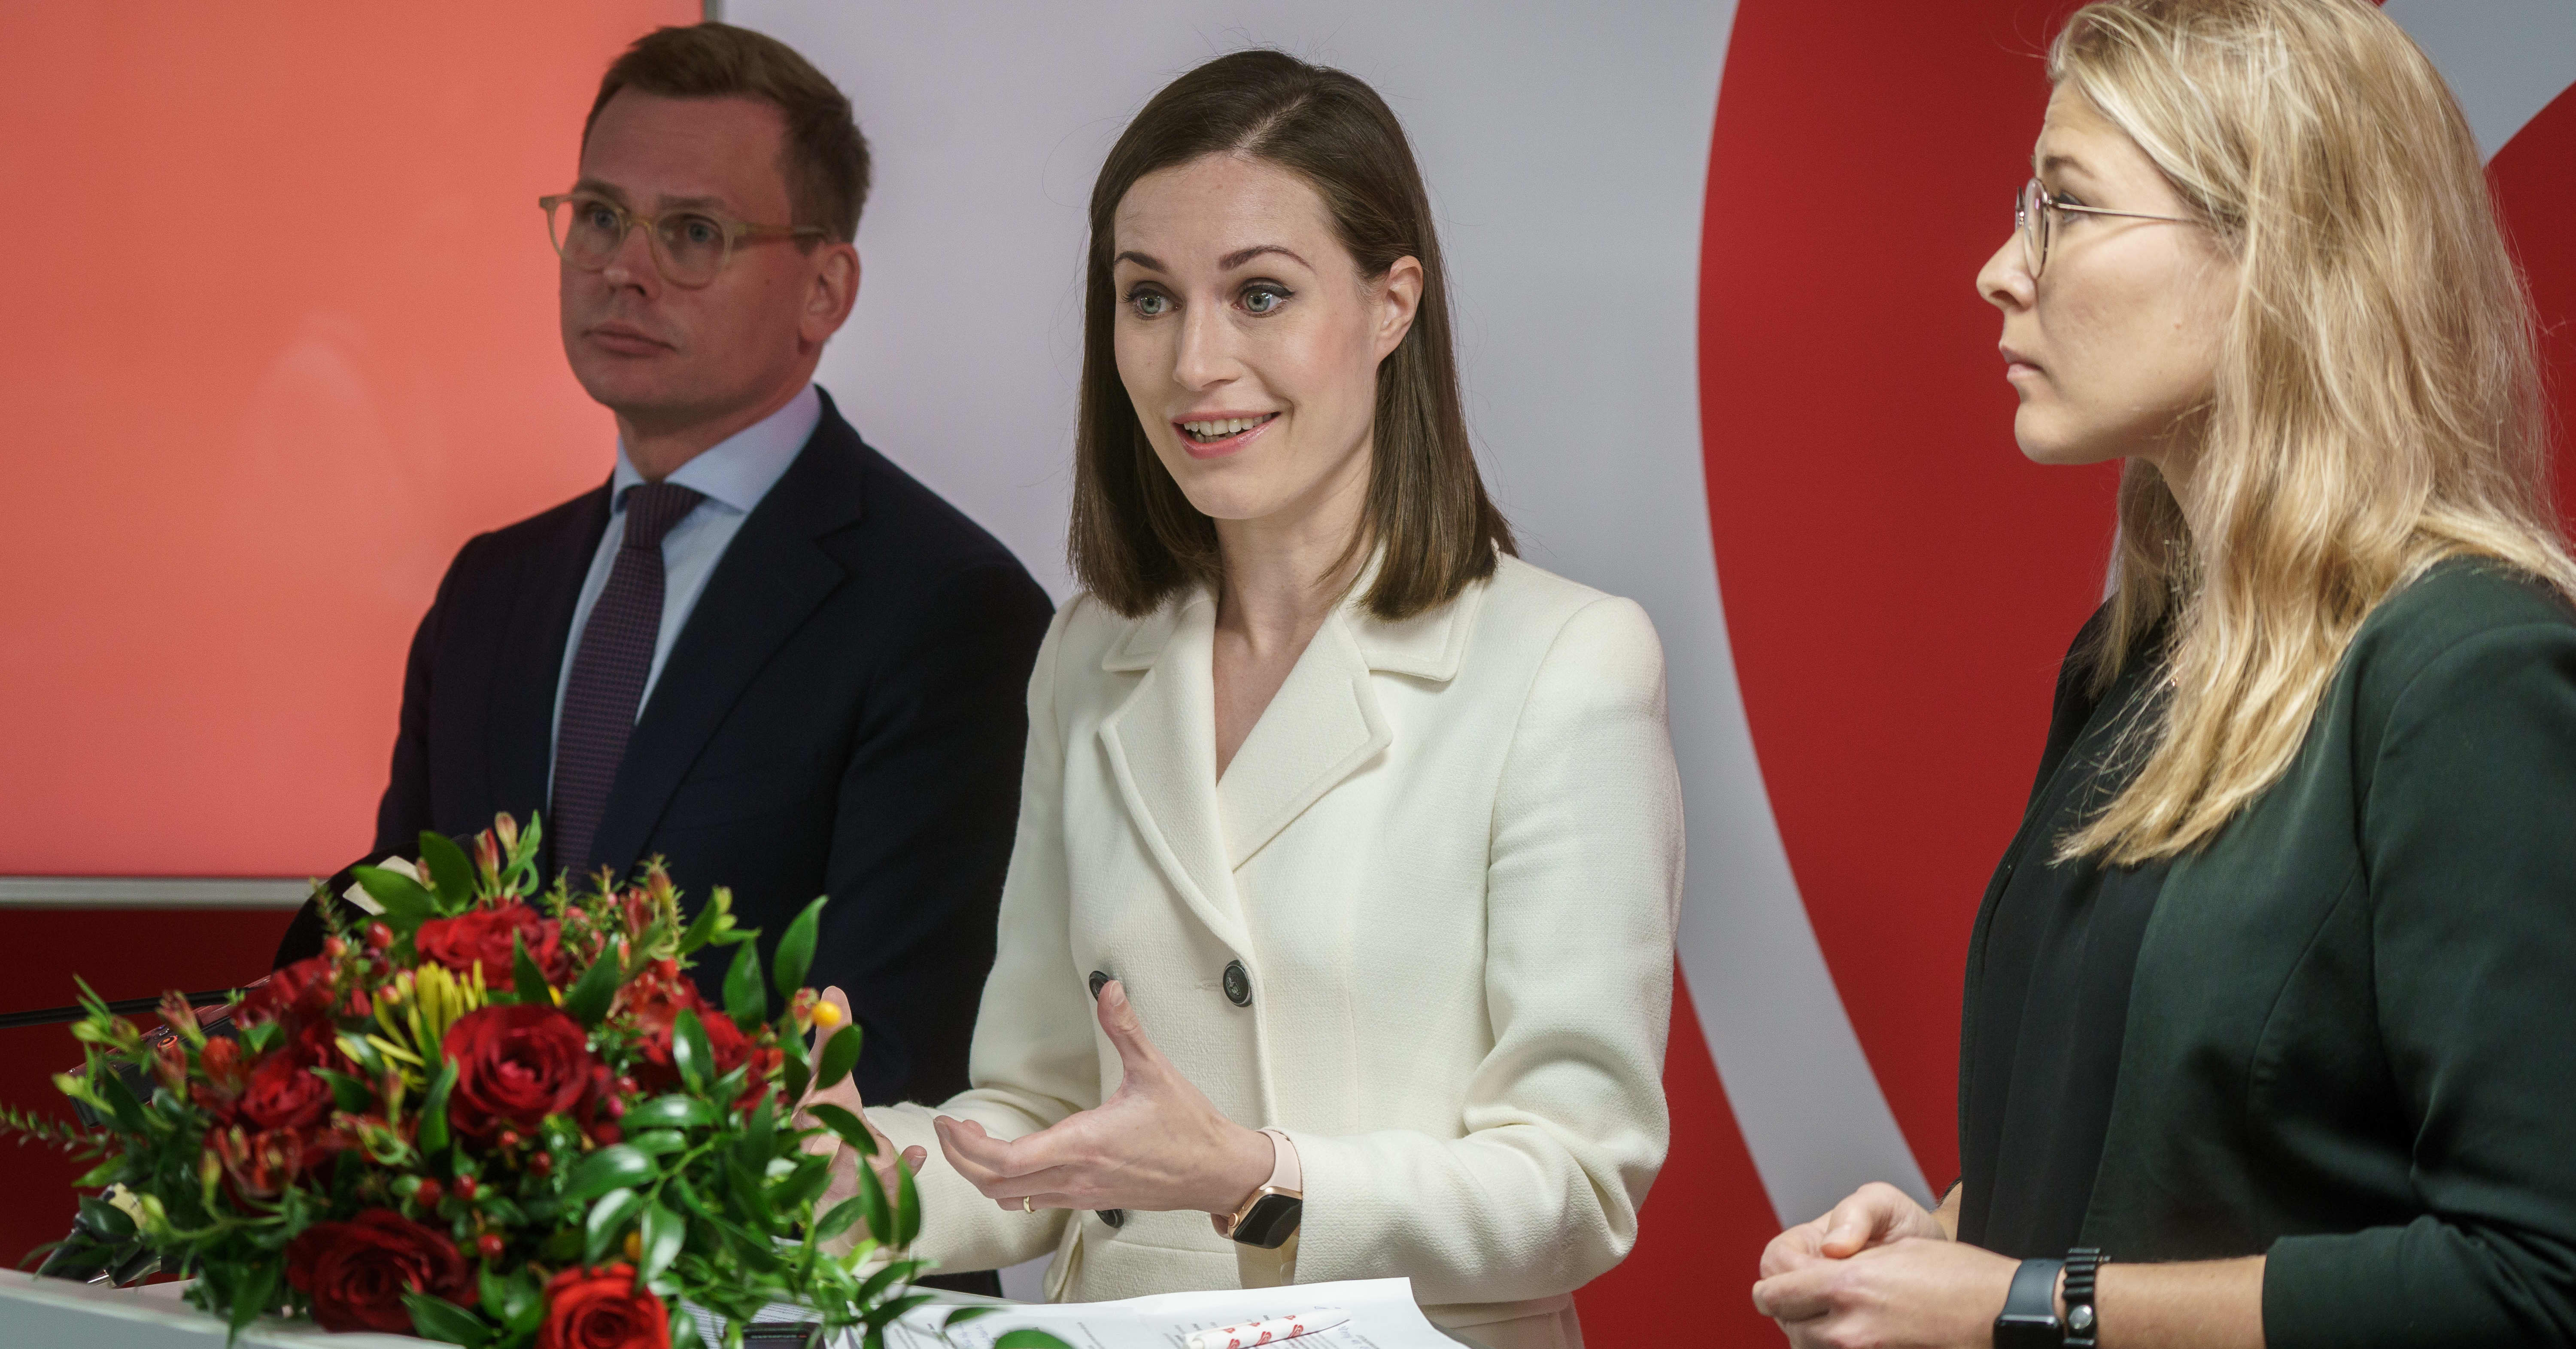 SDP:n vaikuttajat antavat vahvan tuen Sanna Marinille – Ylen kyselyssä puheenjohtaja saa kymppejä ja ylistystä: ”Sanna vie meitä eteenpäin”